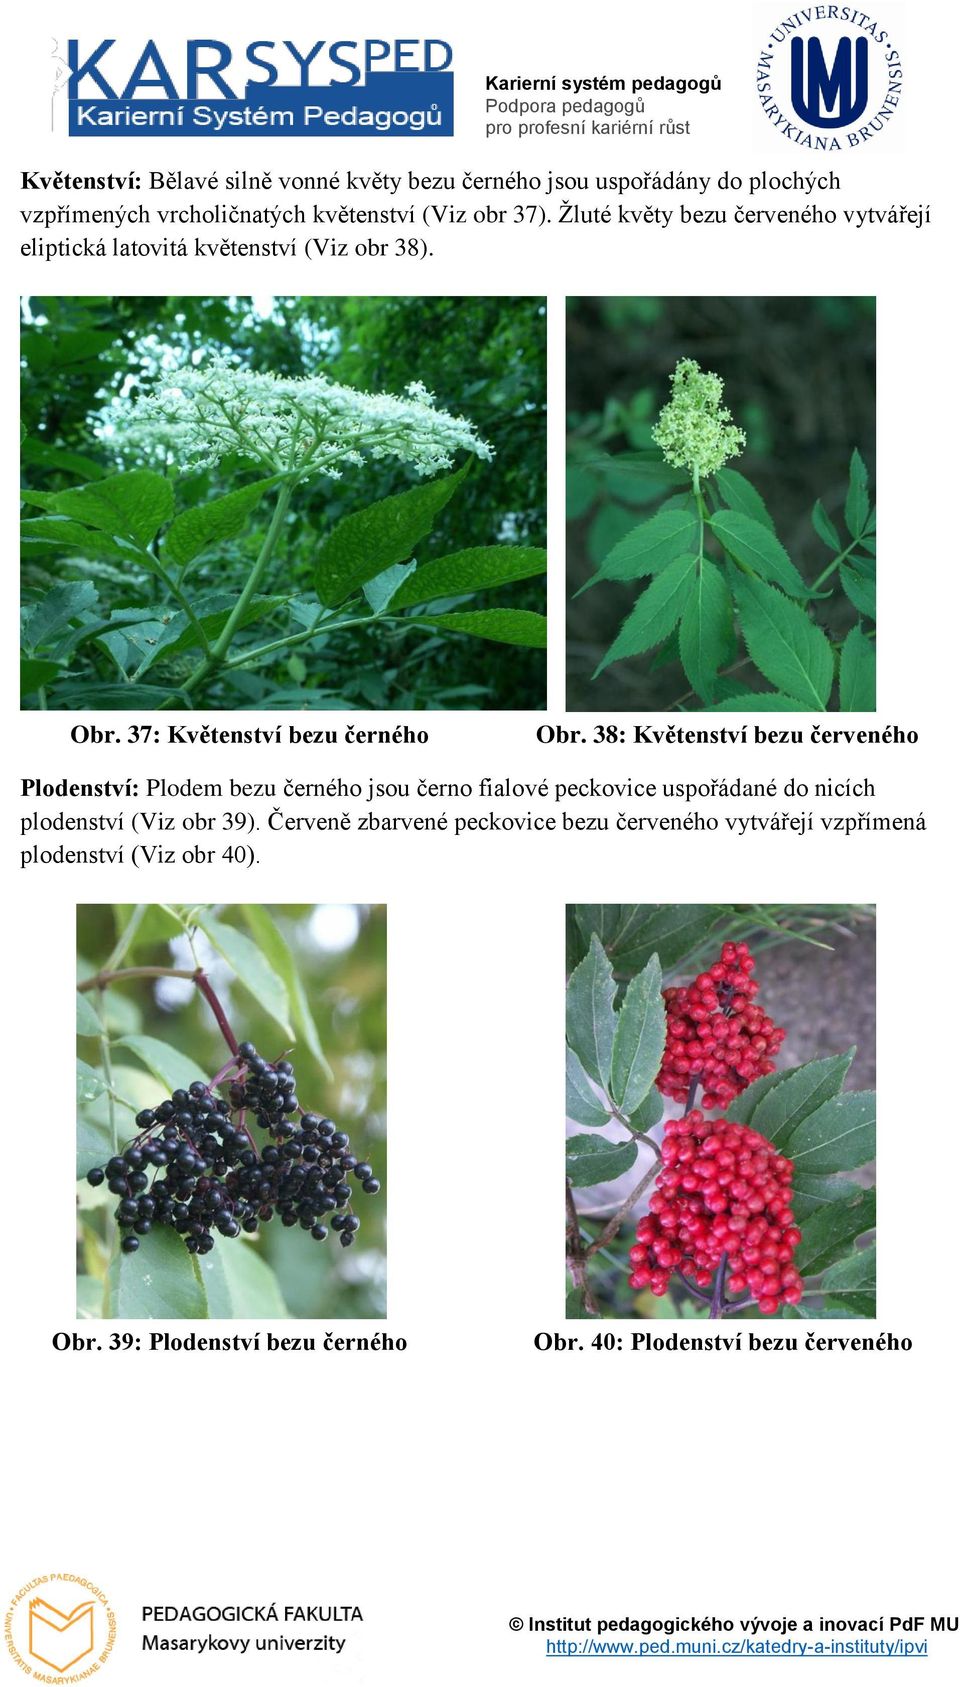 38: Květenství bezu červeného Plodenství: Plodem bezu černého jsou černo fialové peckovice uspořádané do nicích plodenství (Viz obr